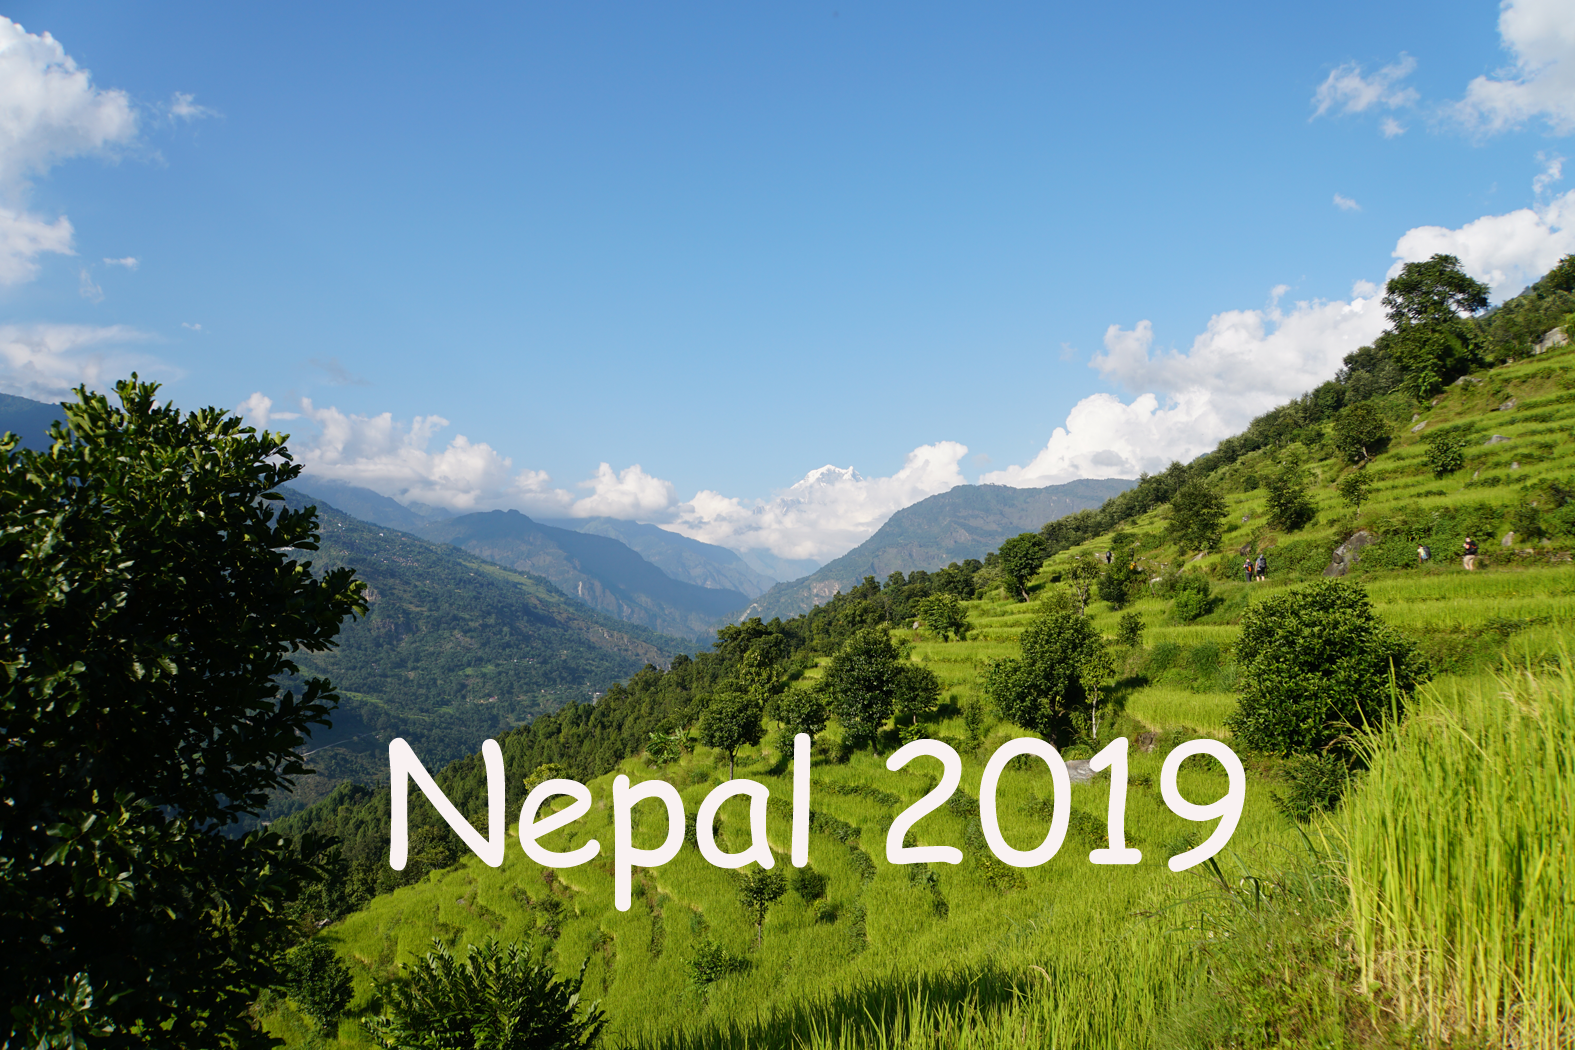 Nepal 2019